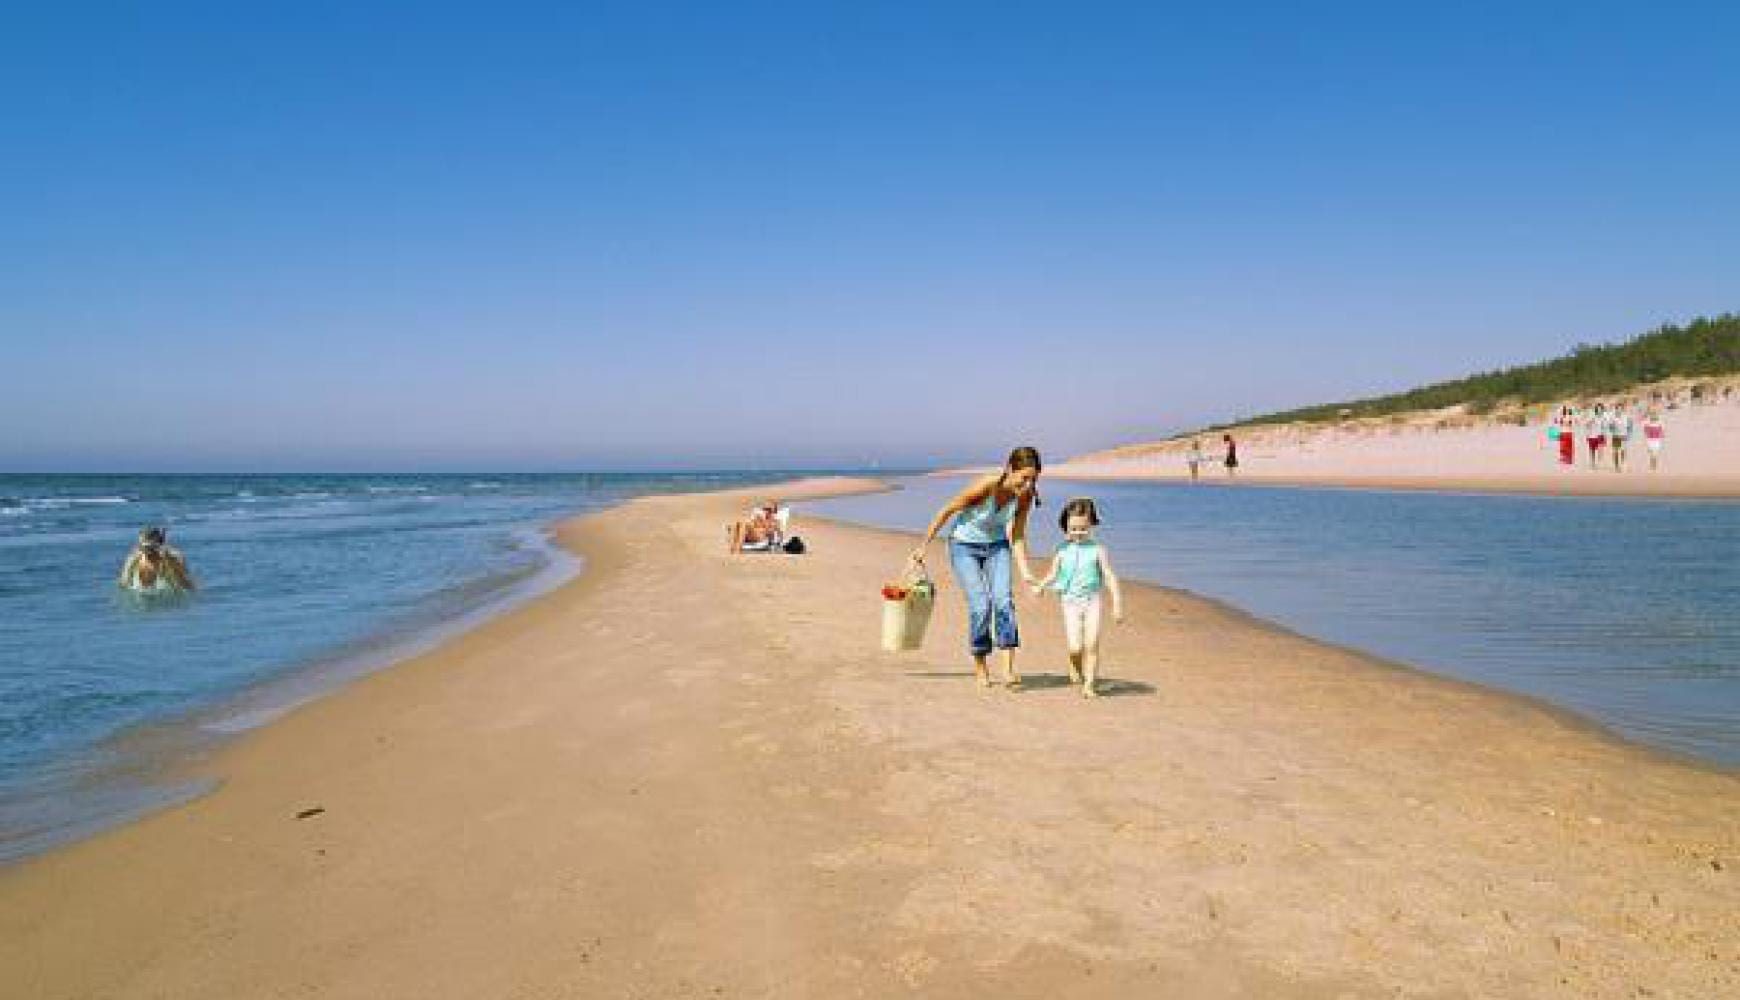 Отдых на балтийском море в польше: какая температура воды летом и где можно купаться и загорать на пляже балтики?